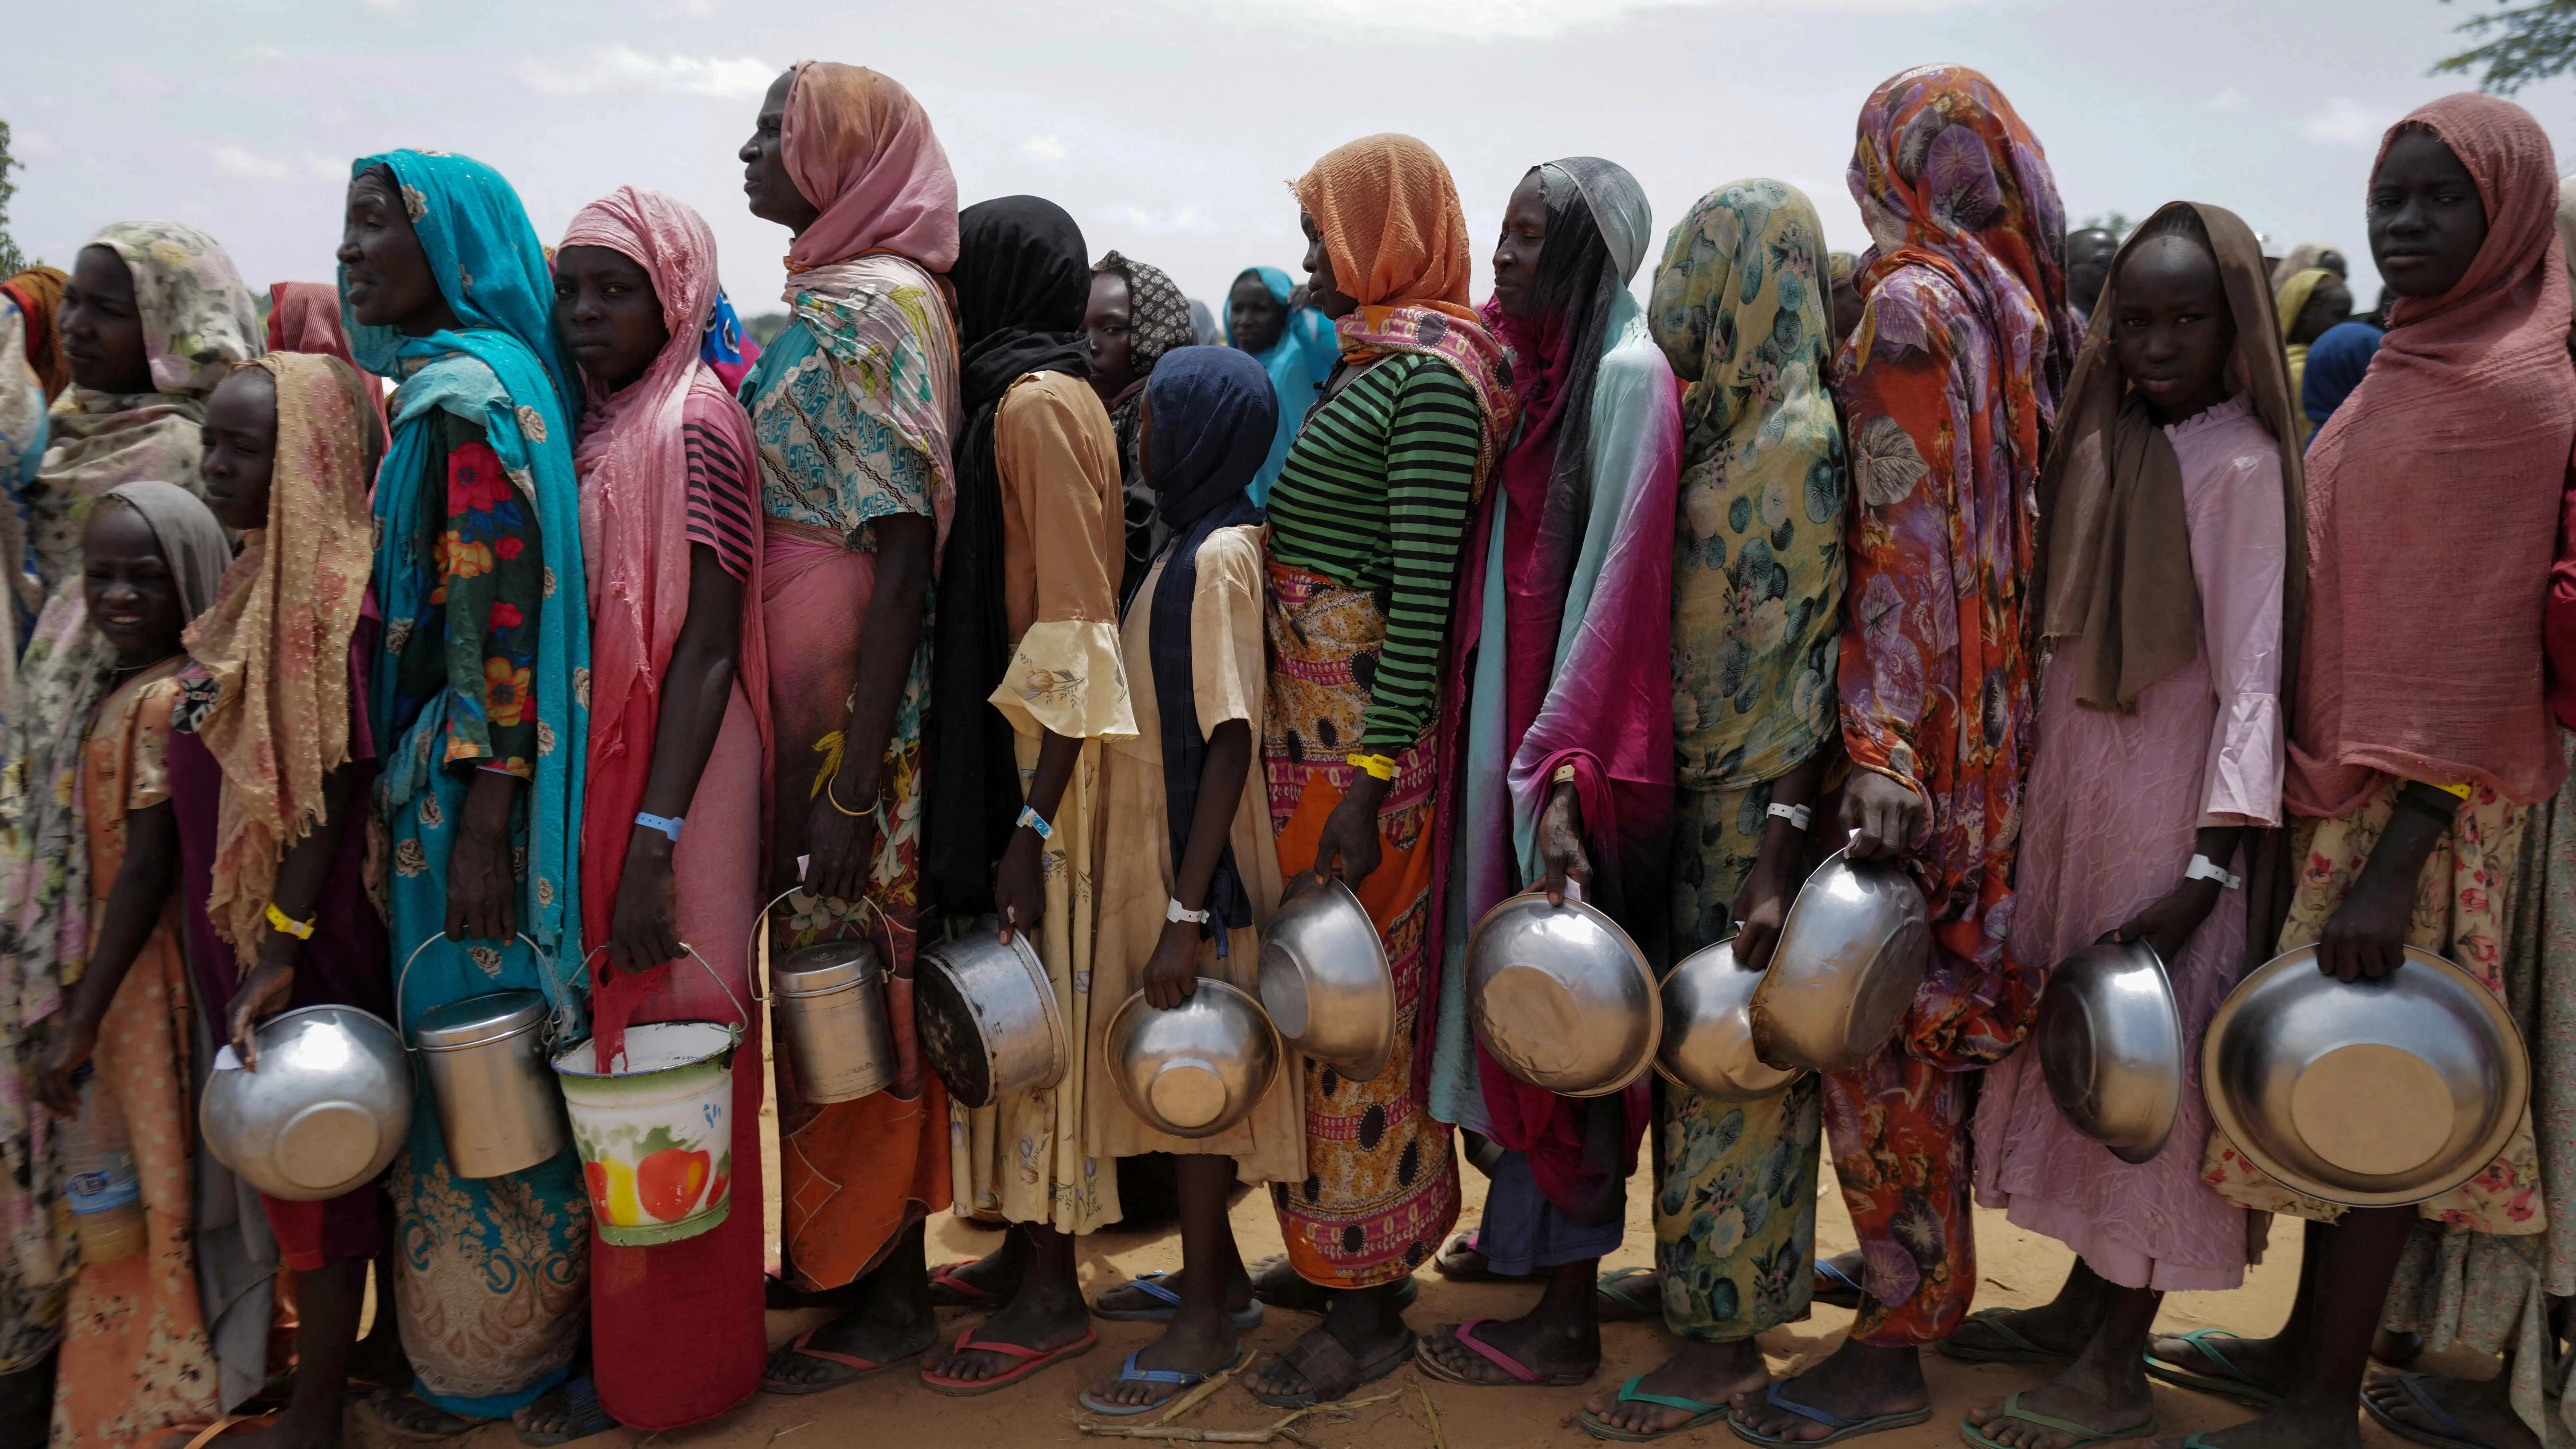 نيويورك تايمز: الجيش السوداني "يعمّق أزمة الجوع" بمنعه دخول المساعدات